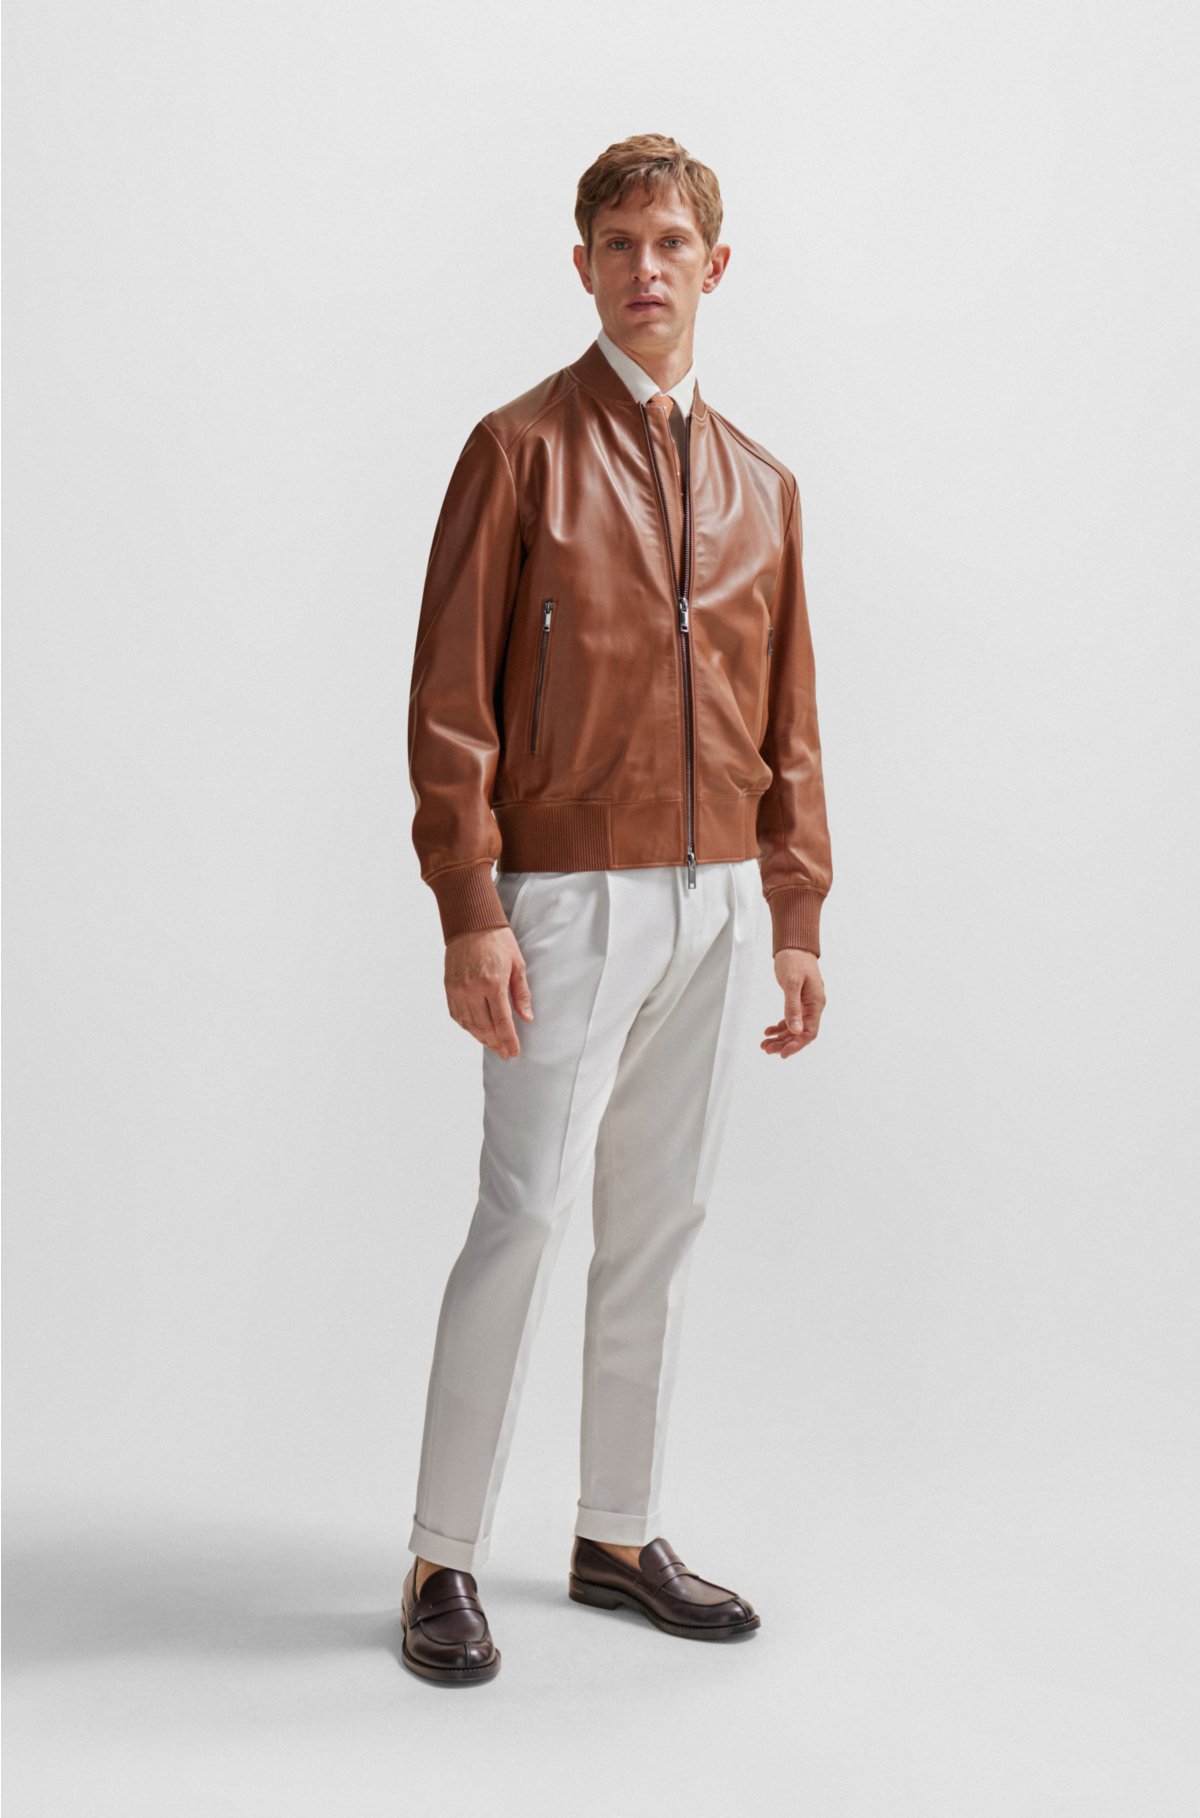 Mukabi sherpa-lined leather jacket